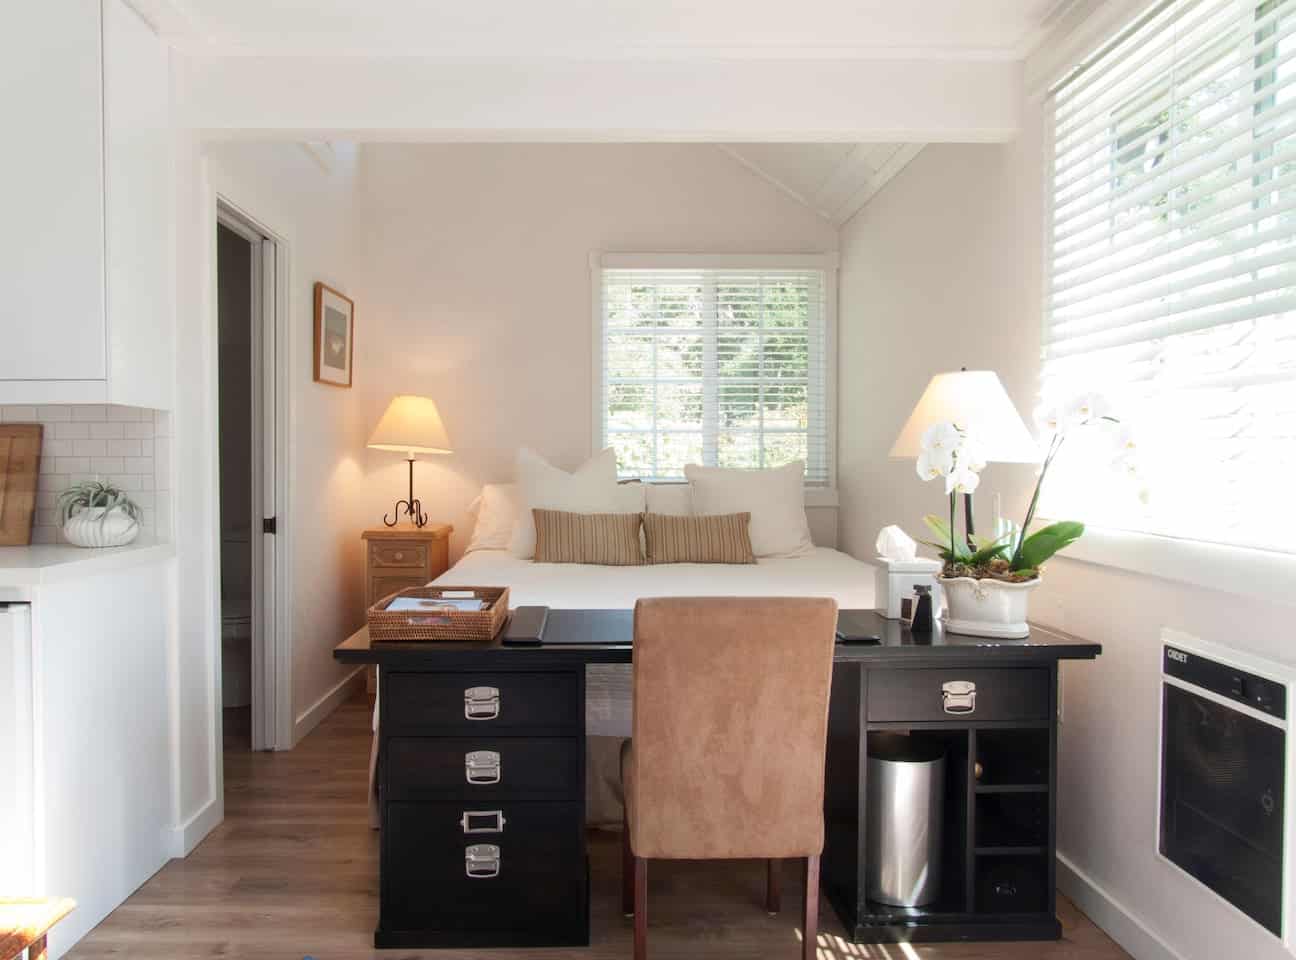 Image of Airbnb rental in Santa Barbara California